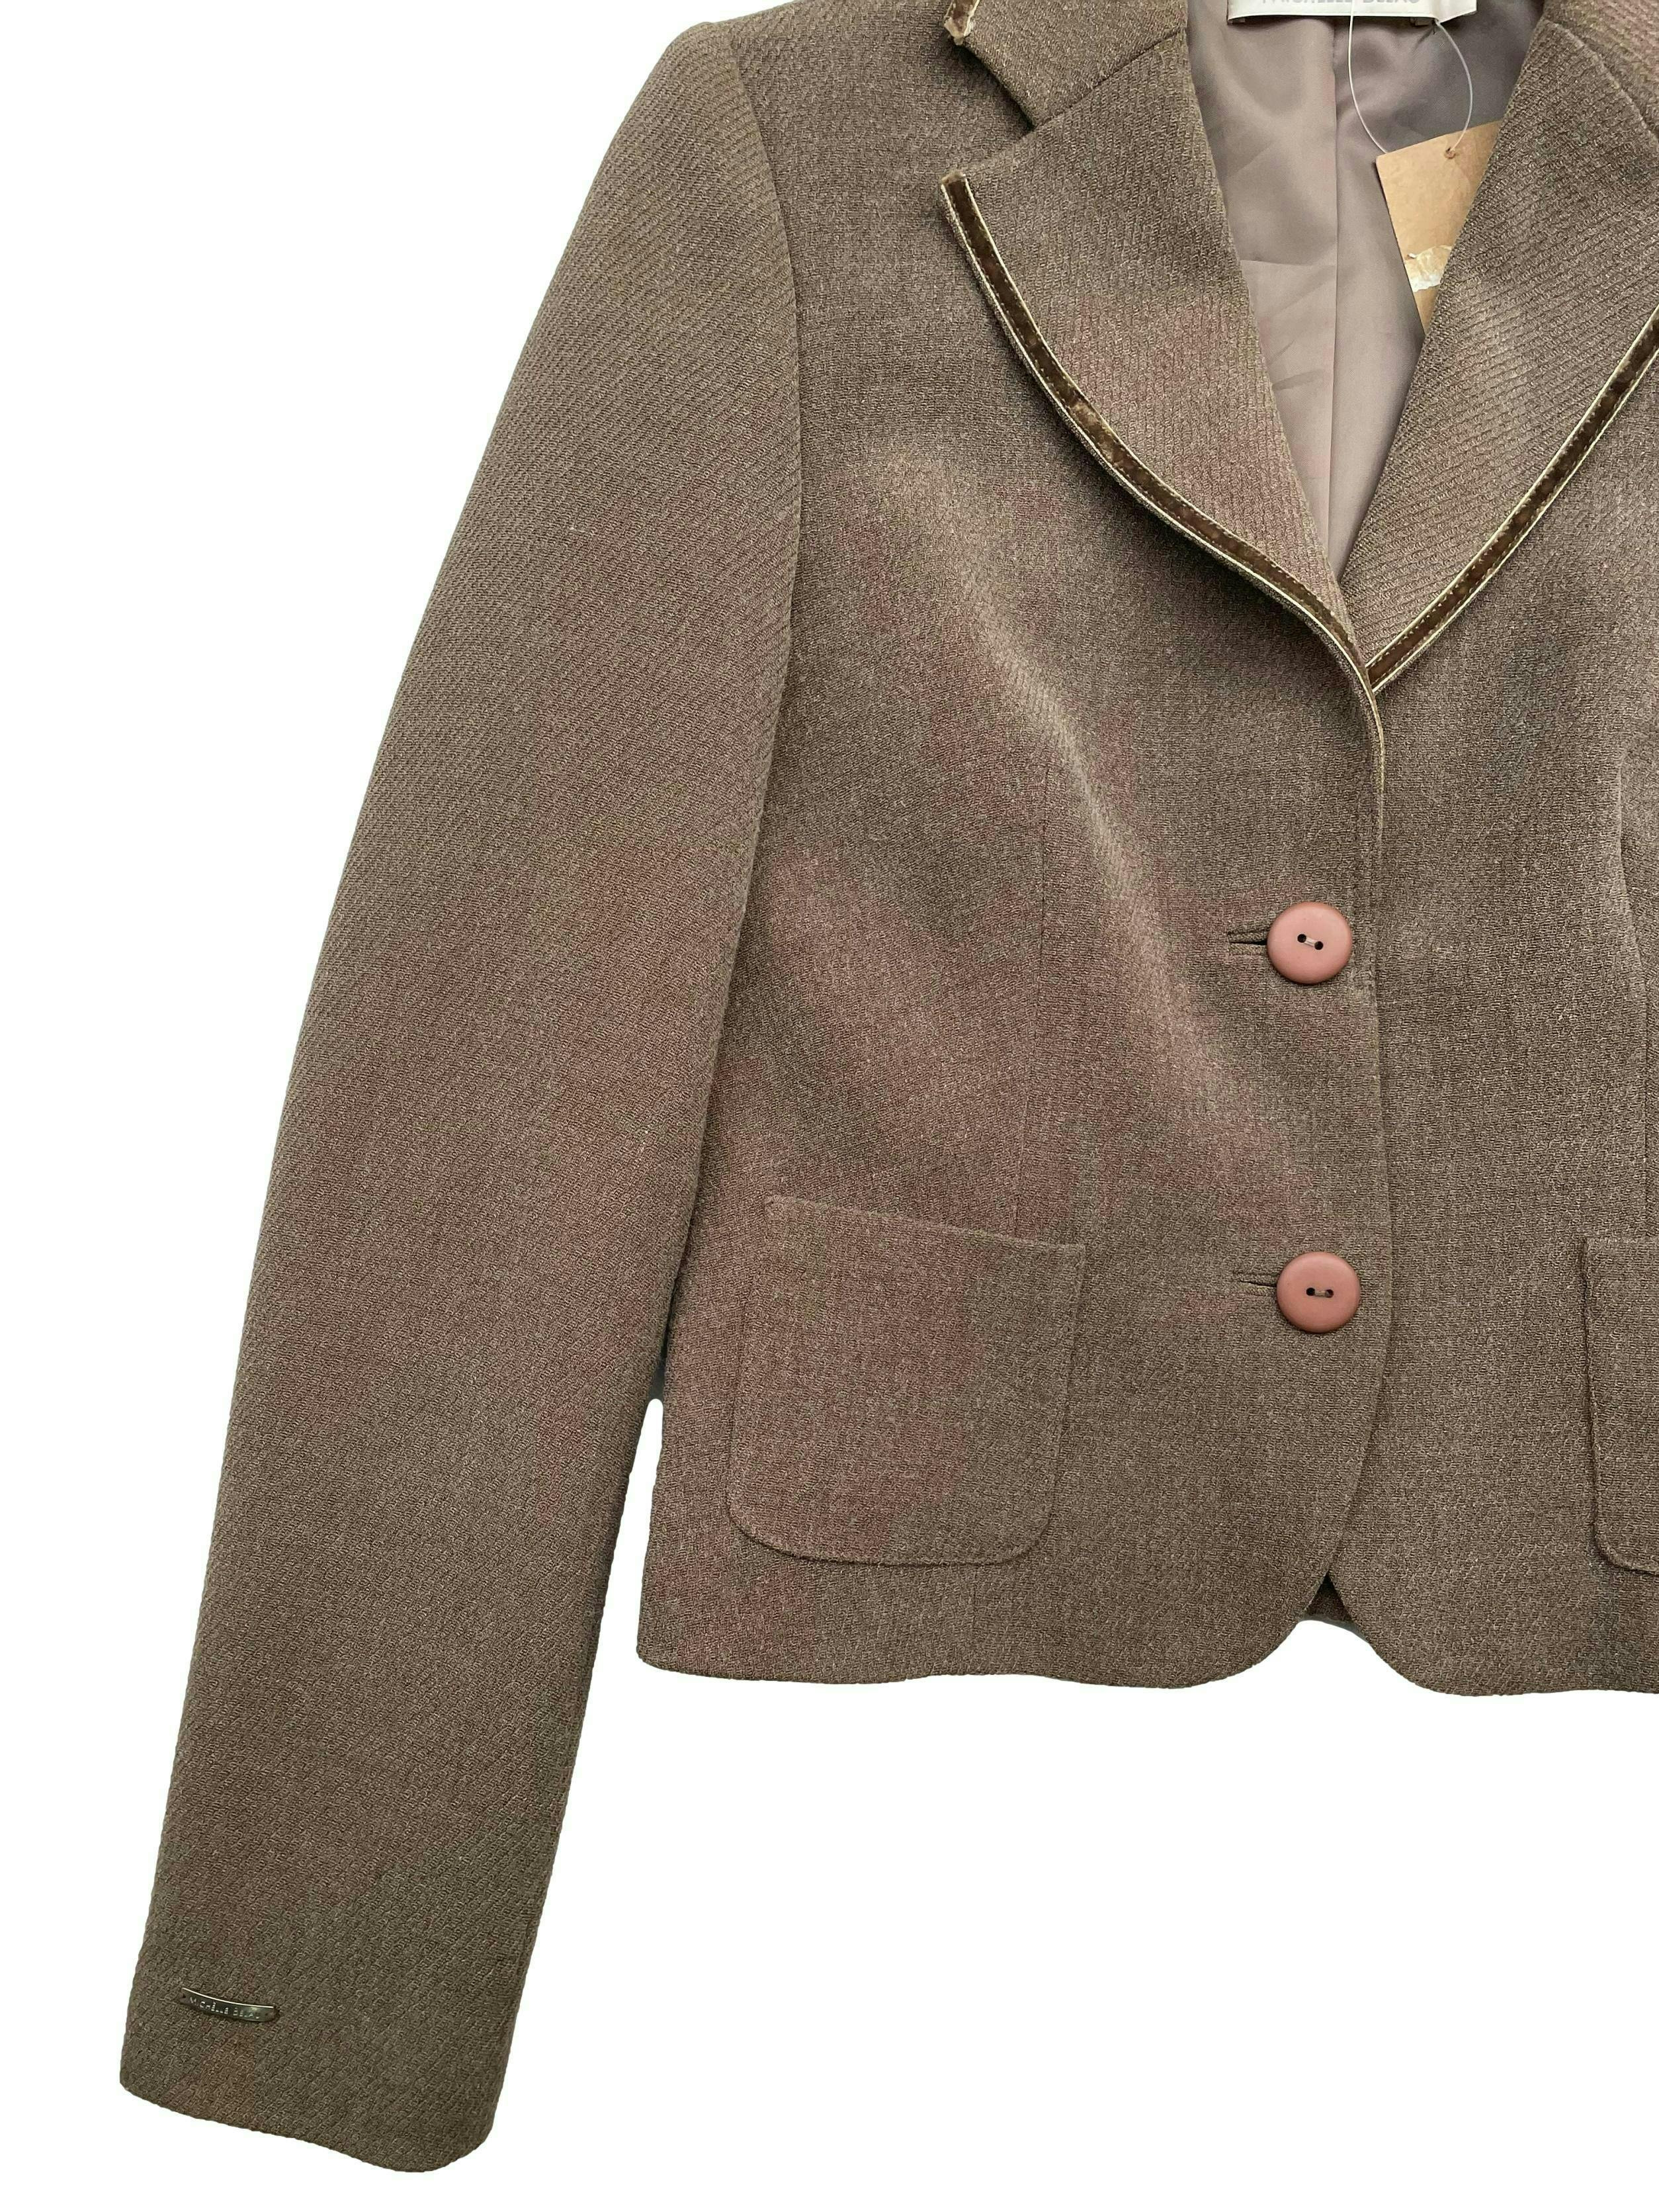 Blazer Michelle Belau marrón claro mezcla de lana, forrado, solapas con ribetes de terciopelo, con hombreras y bolsillos.Busto 84cm, Largo 47cm.